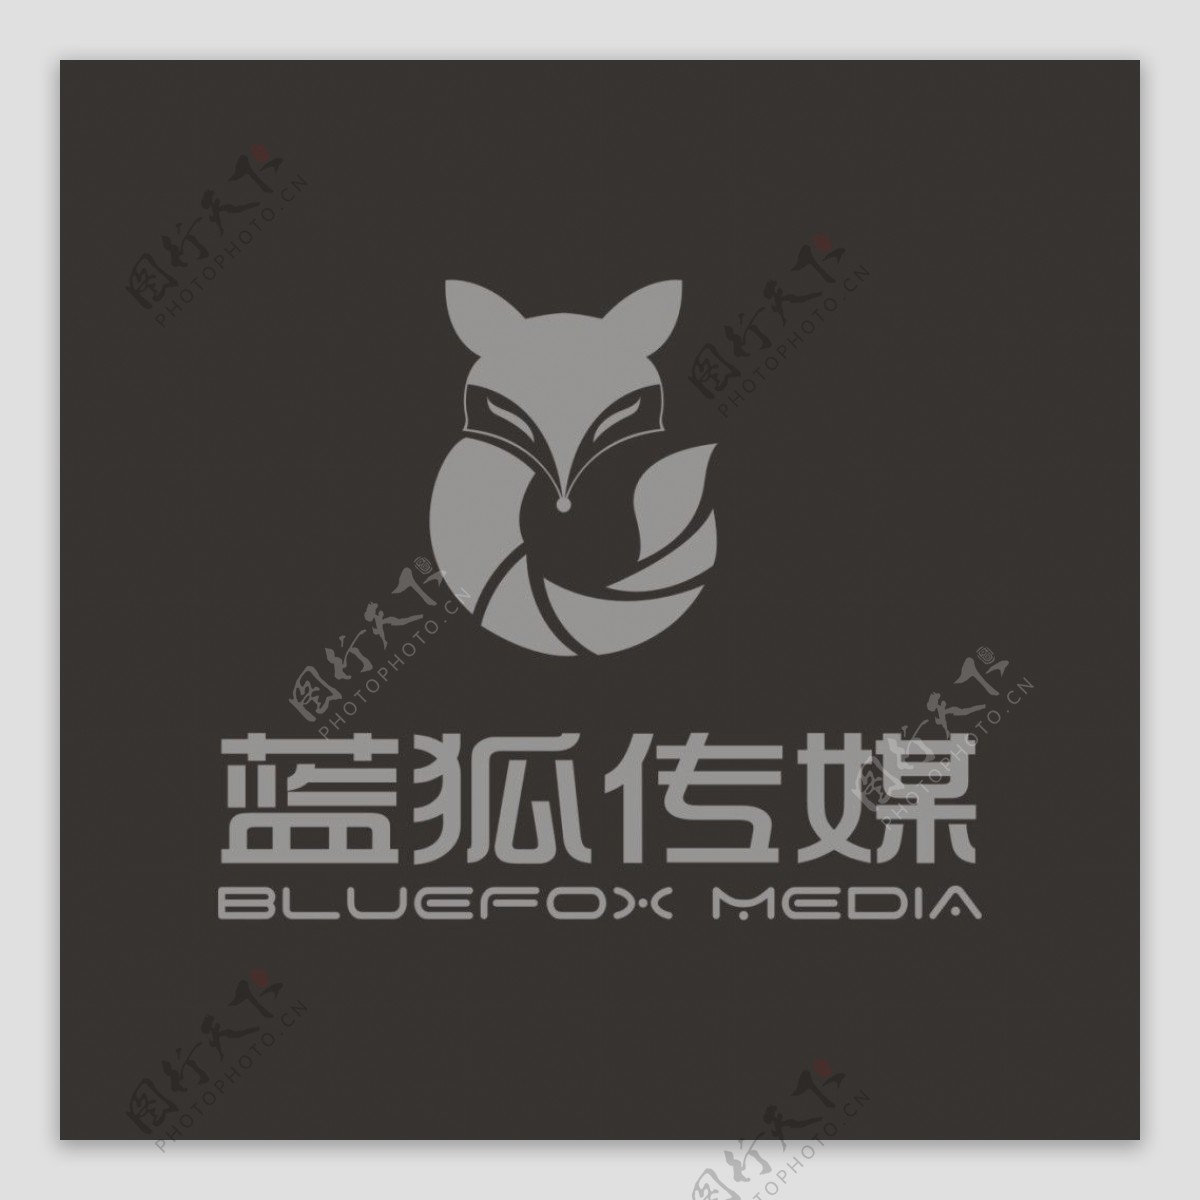 江苏蓝狐传媒logo标志设计